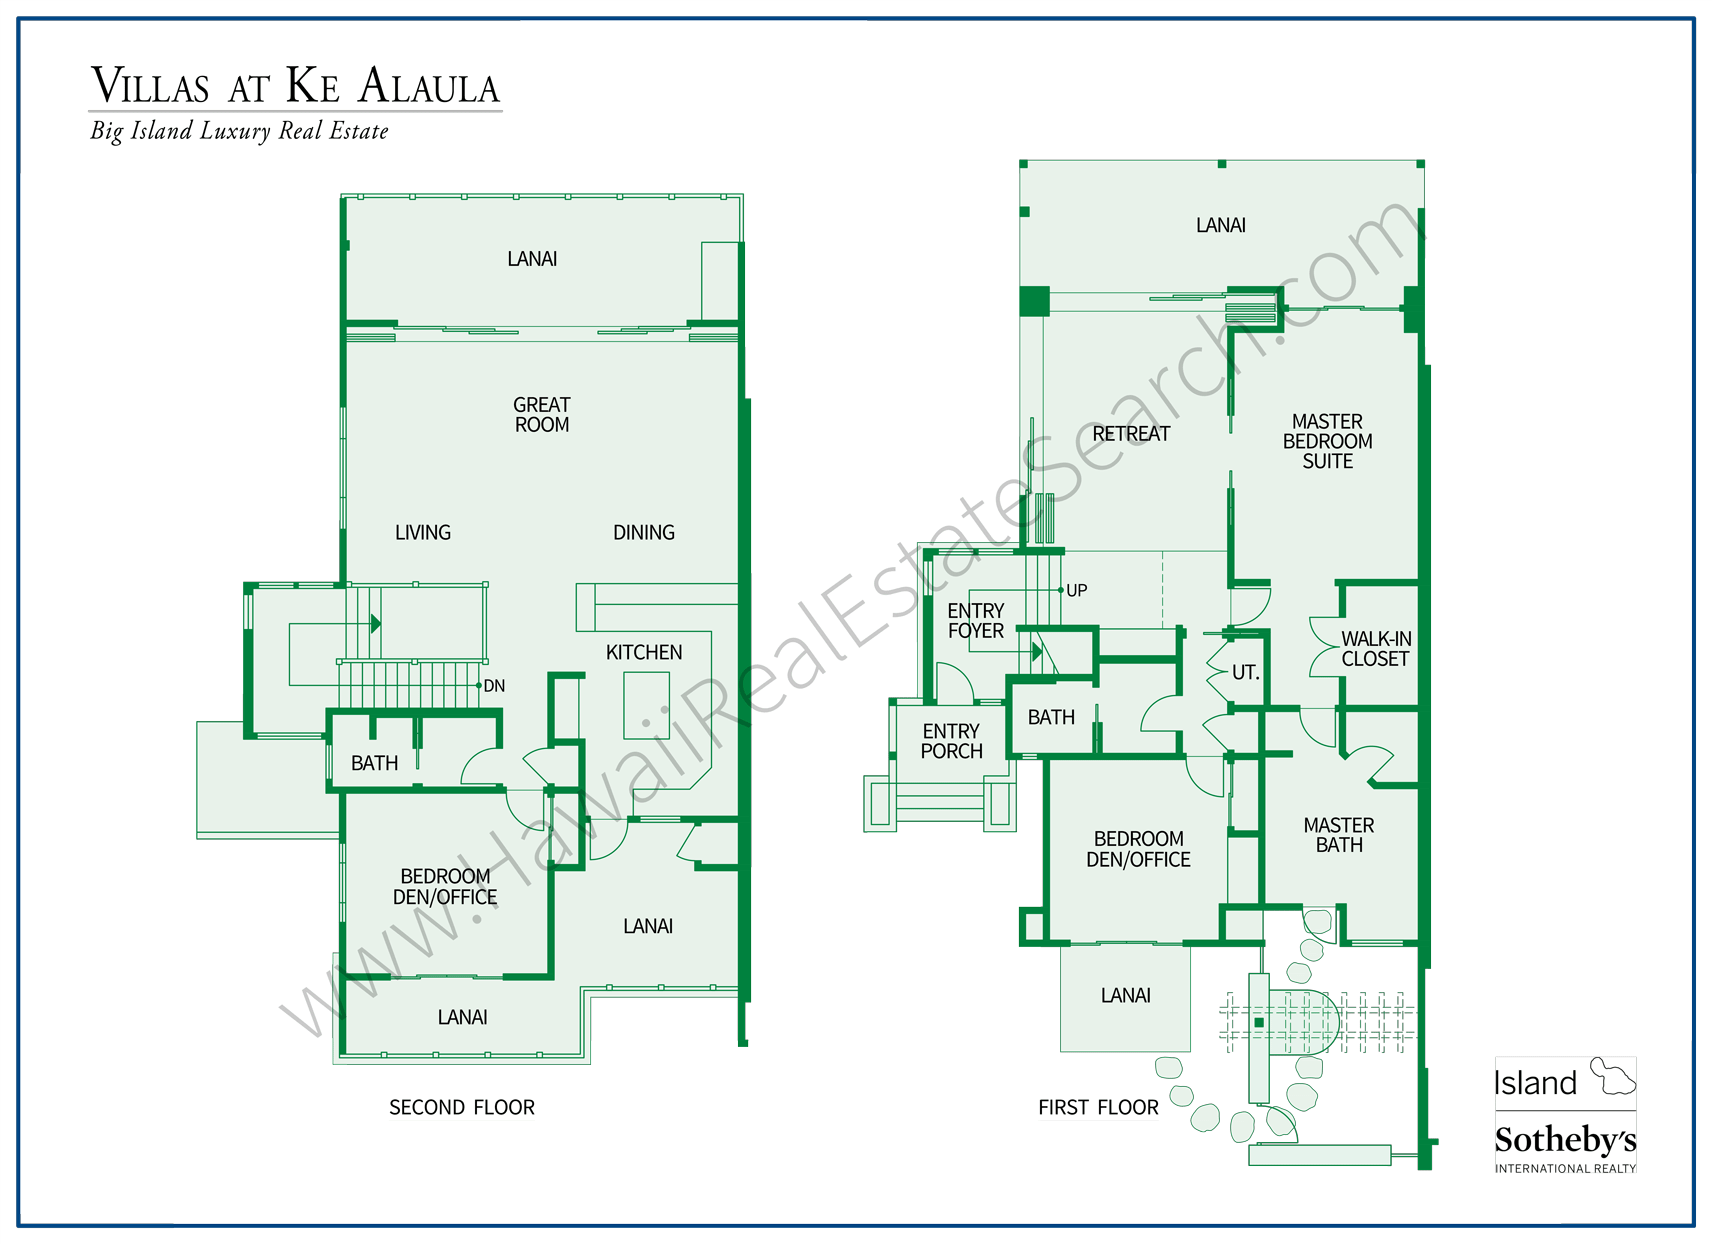 Villas at Ke Alaula Floor Plan